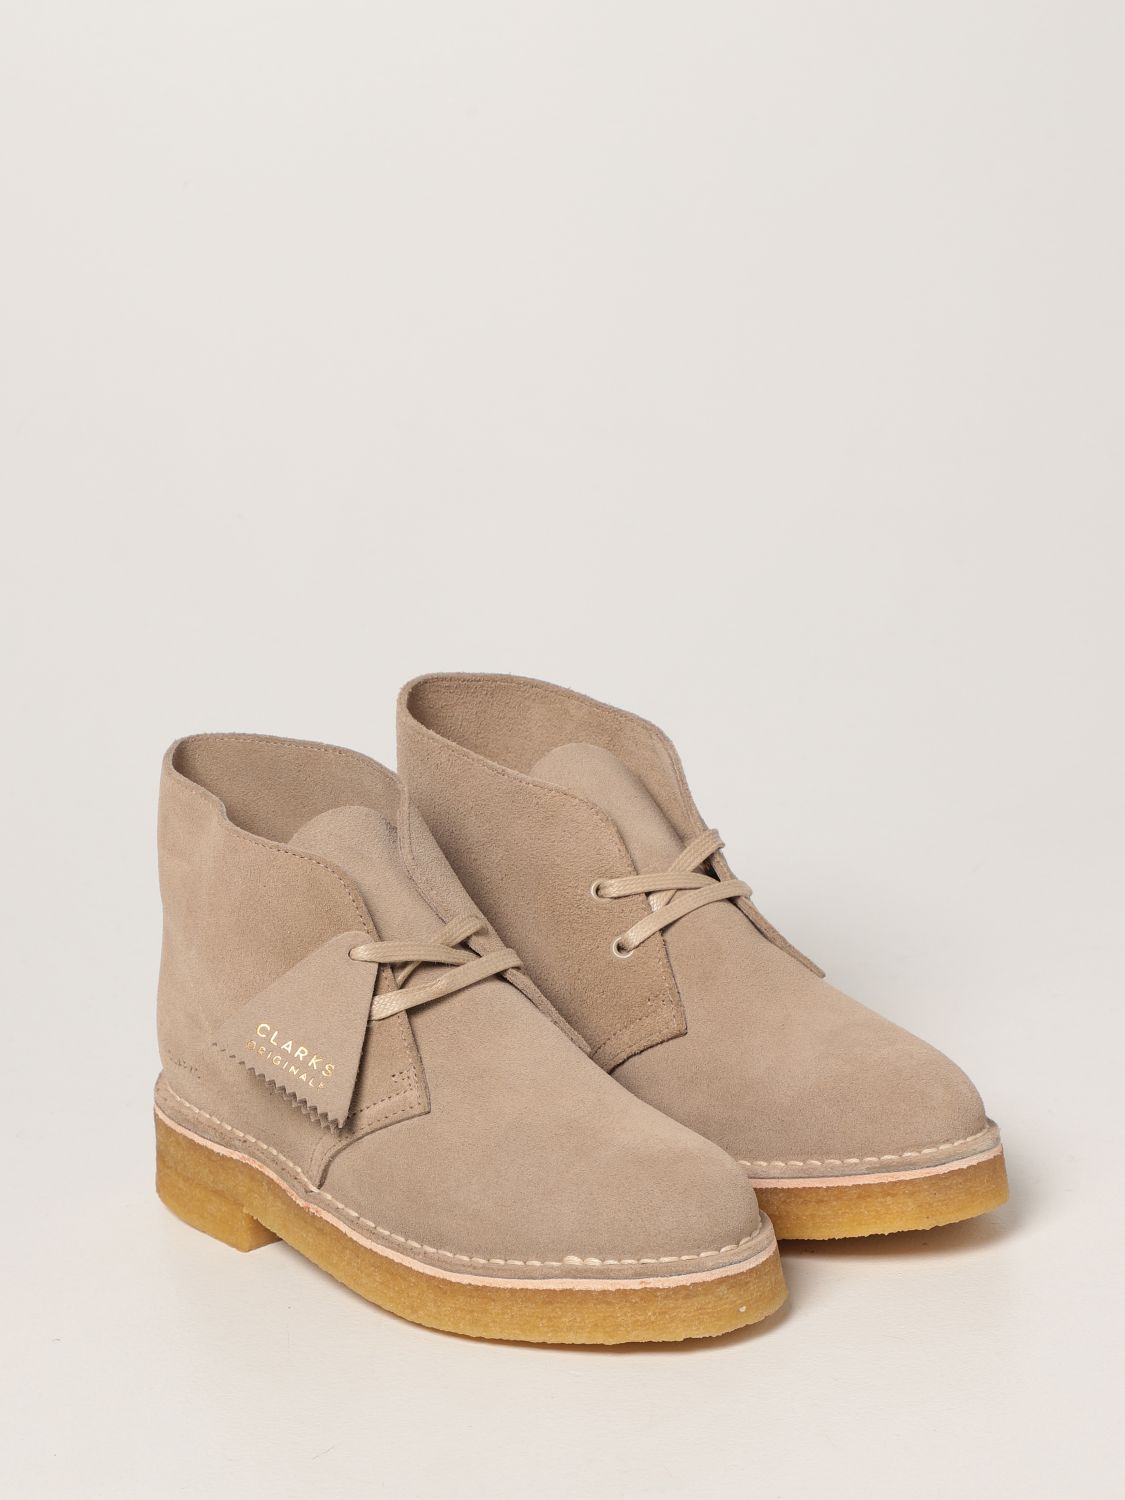 Flat booties Clarks: Desert Boots Clarks Originals in suede sand 2